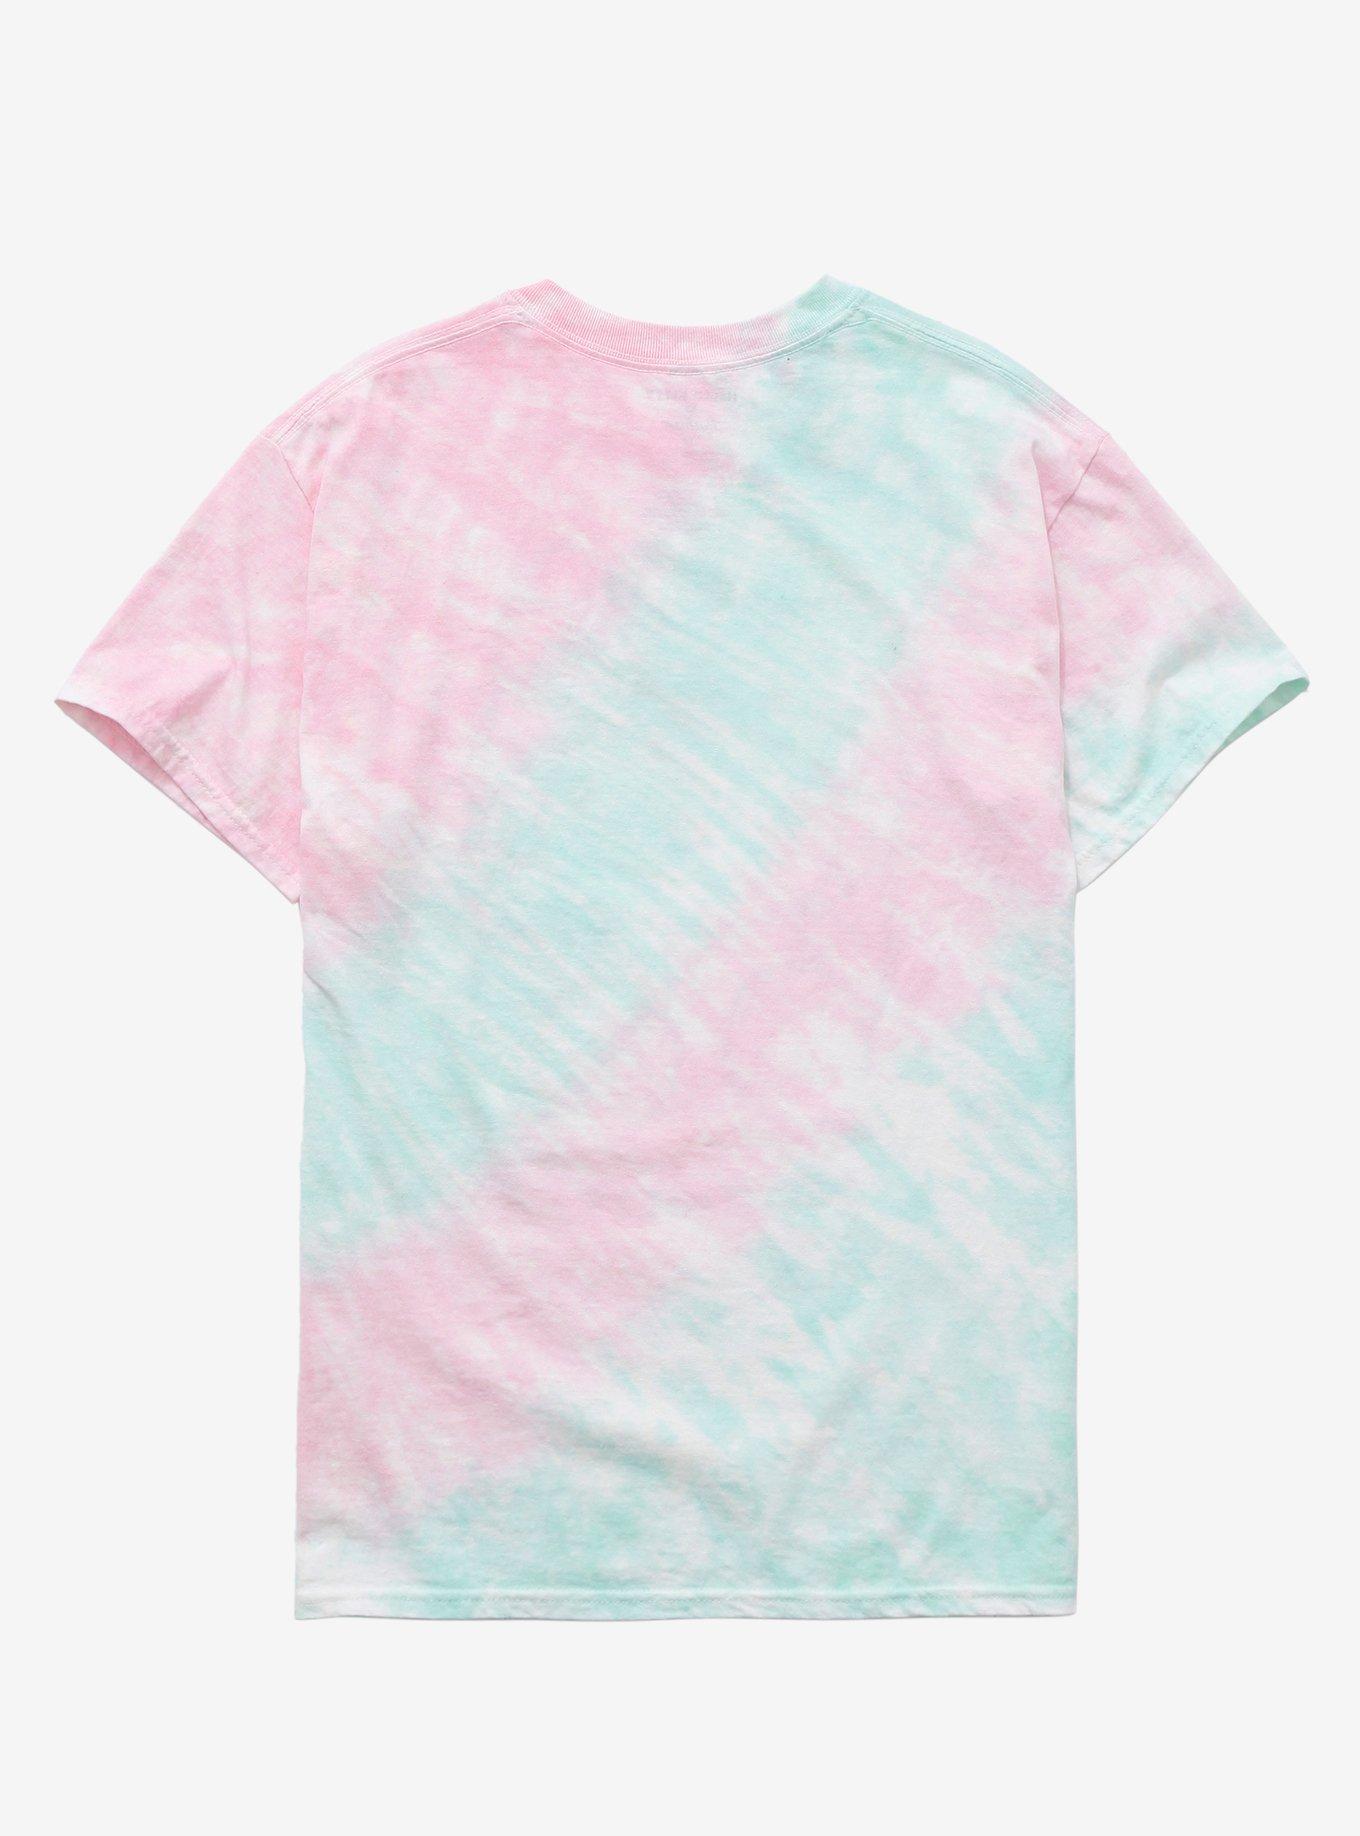 Hello Kitty X Pusheen Tie-Dye Boyfriend Fit Girls T-Shirt, MULTI, alternate